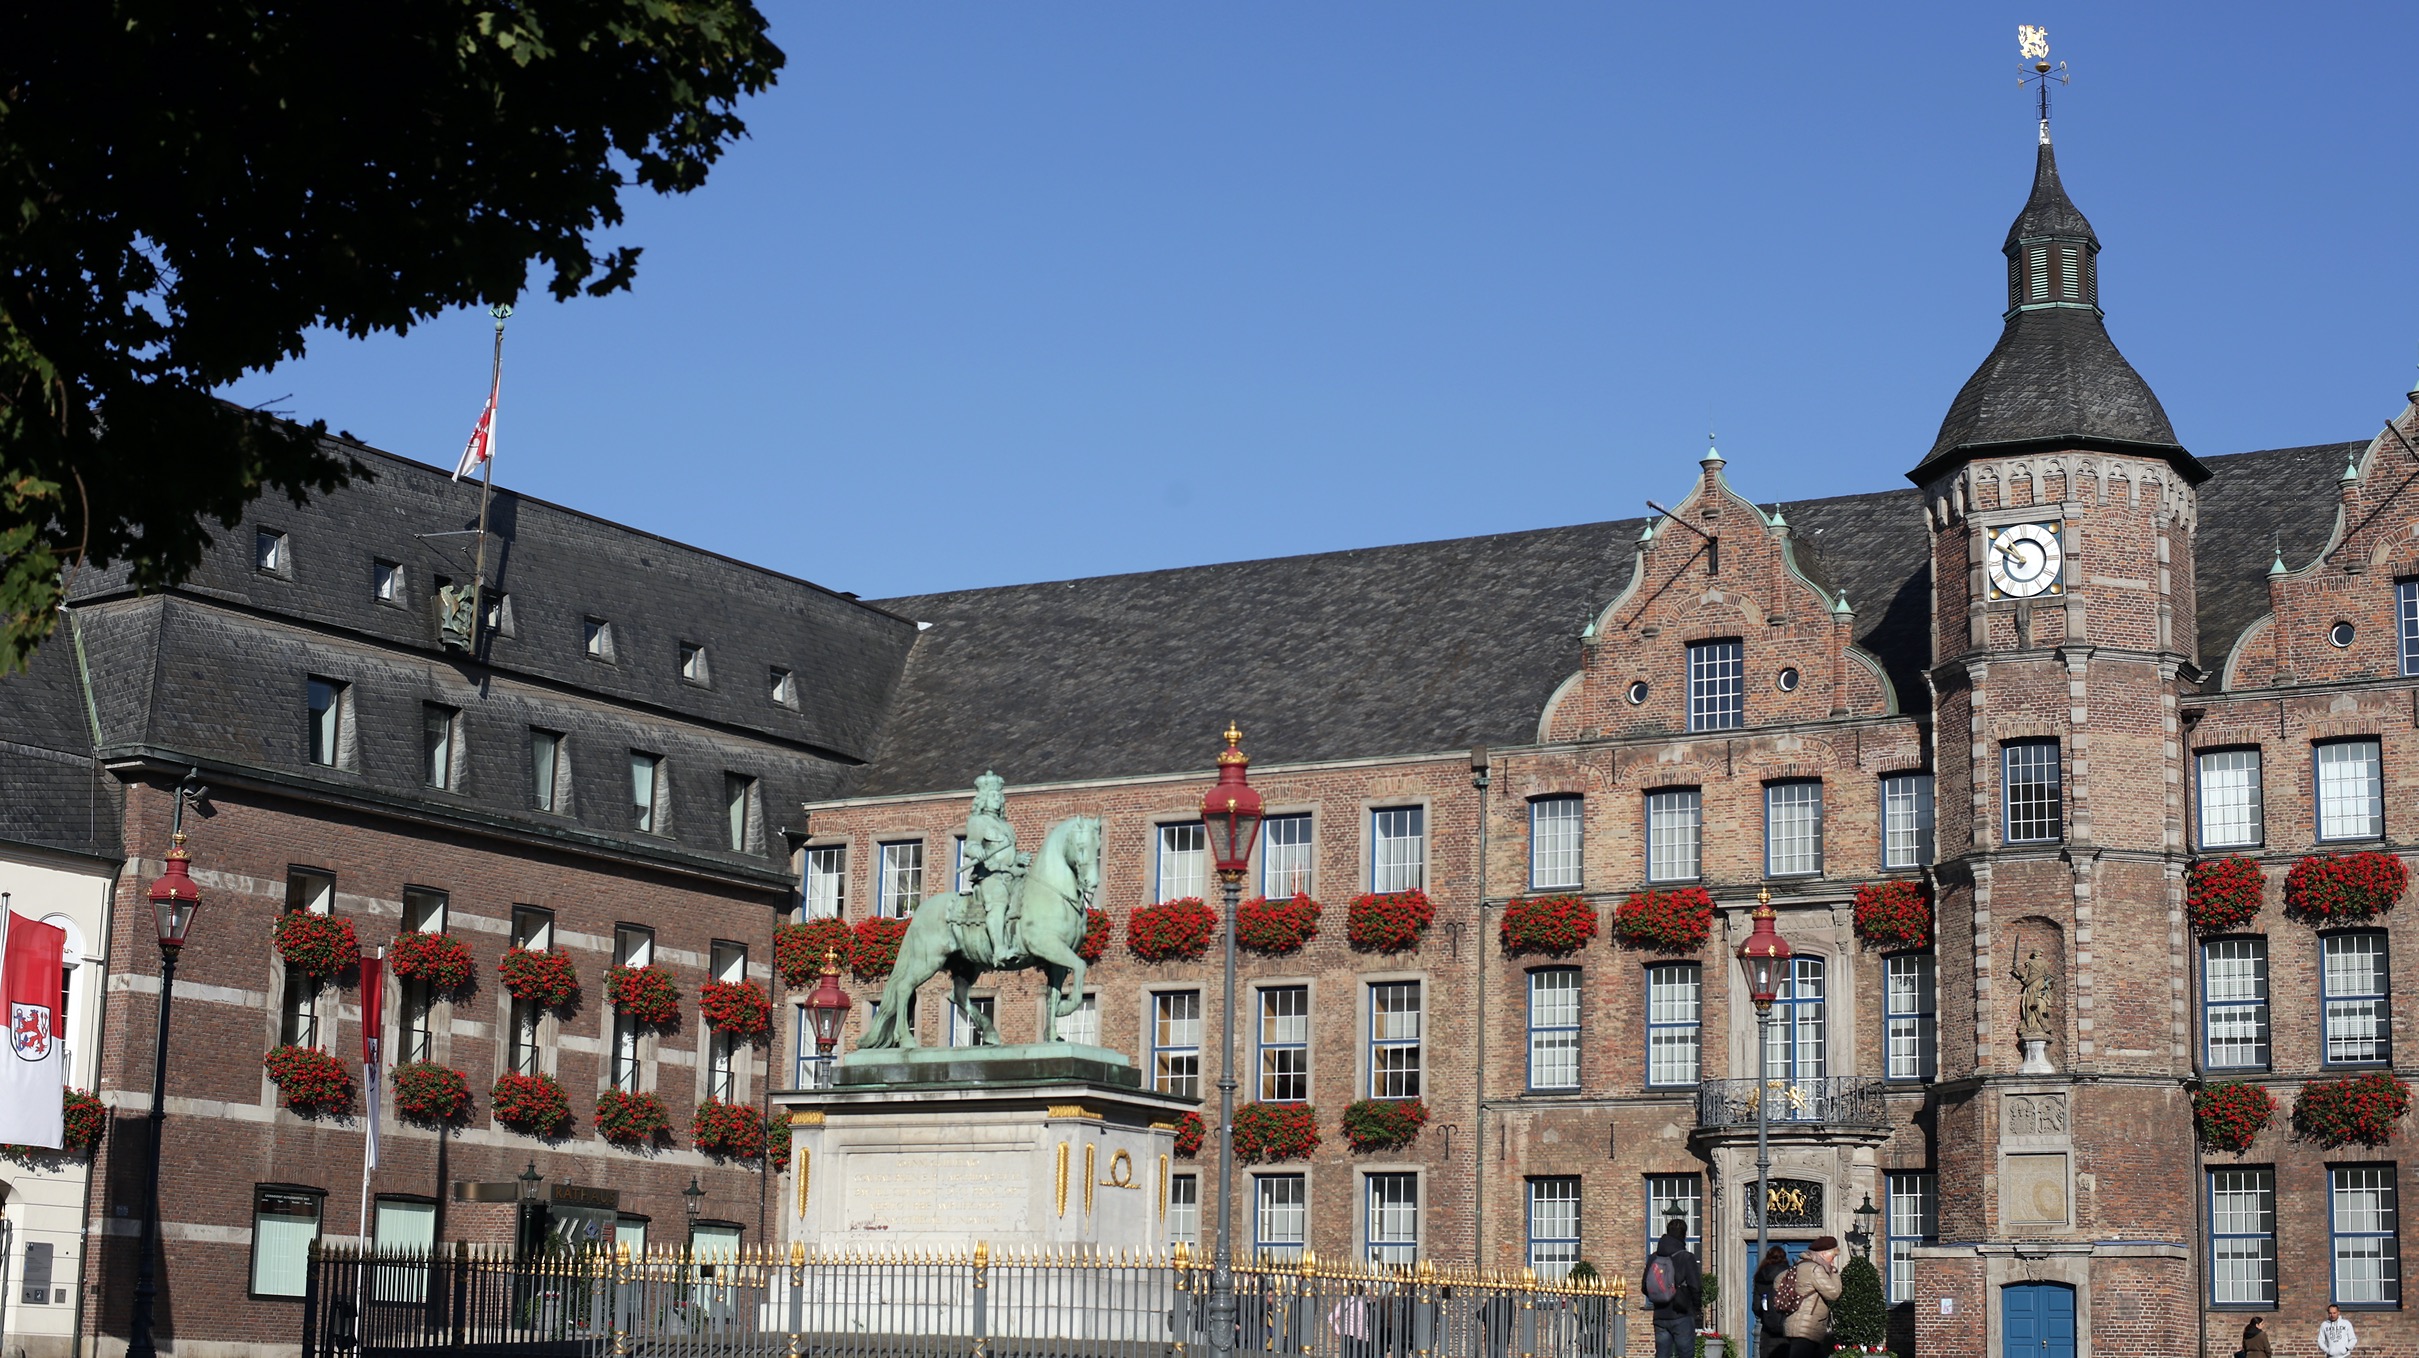 Duesseldorfer Rathaus, , Öffentlichkeitsbeteiligungen zu vier städtebaulichen Vorhaben